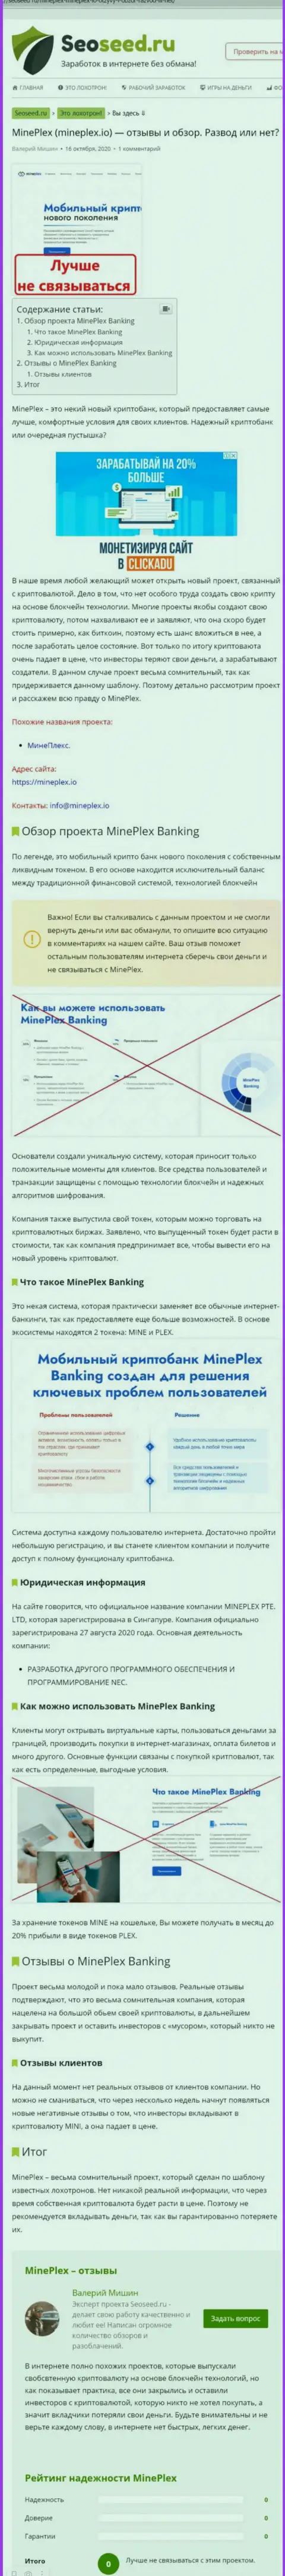 С MinePlex Io не сможете заработать !!! Денежные вложения сливают  - это МОШЕННИКИ !!! (обзорная статья)